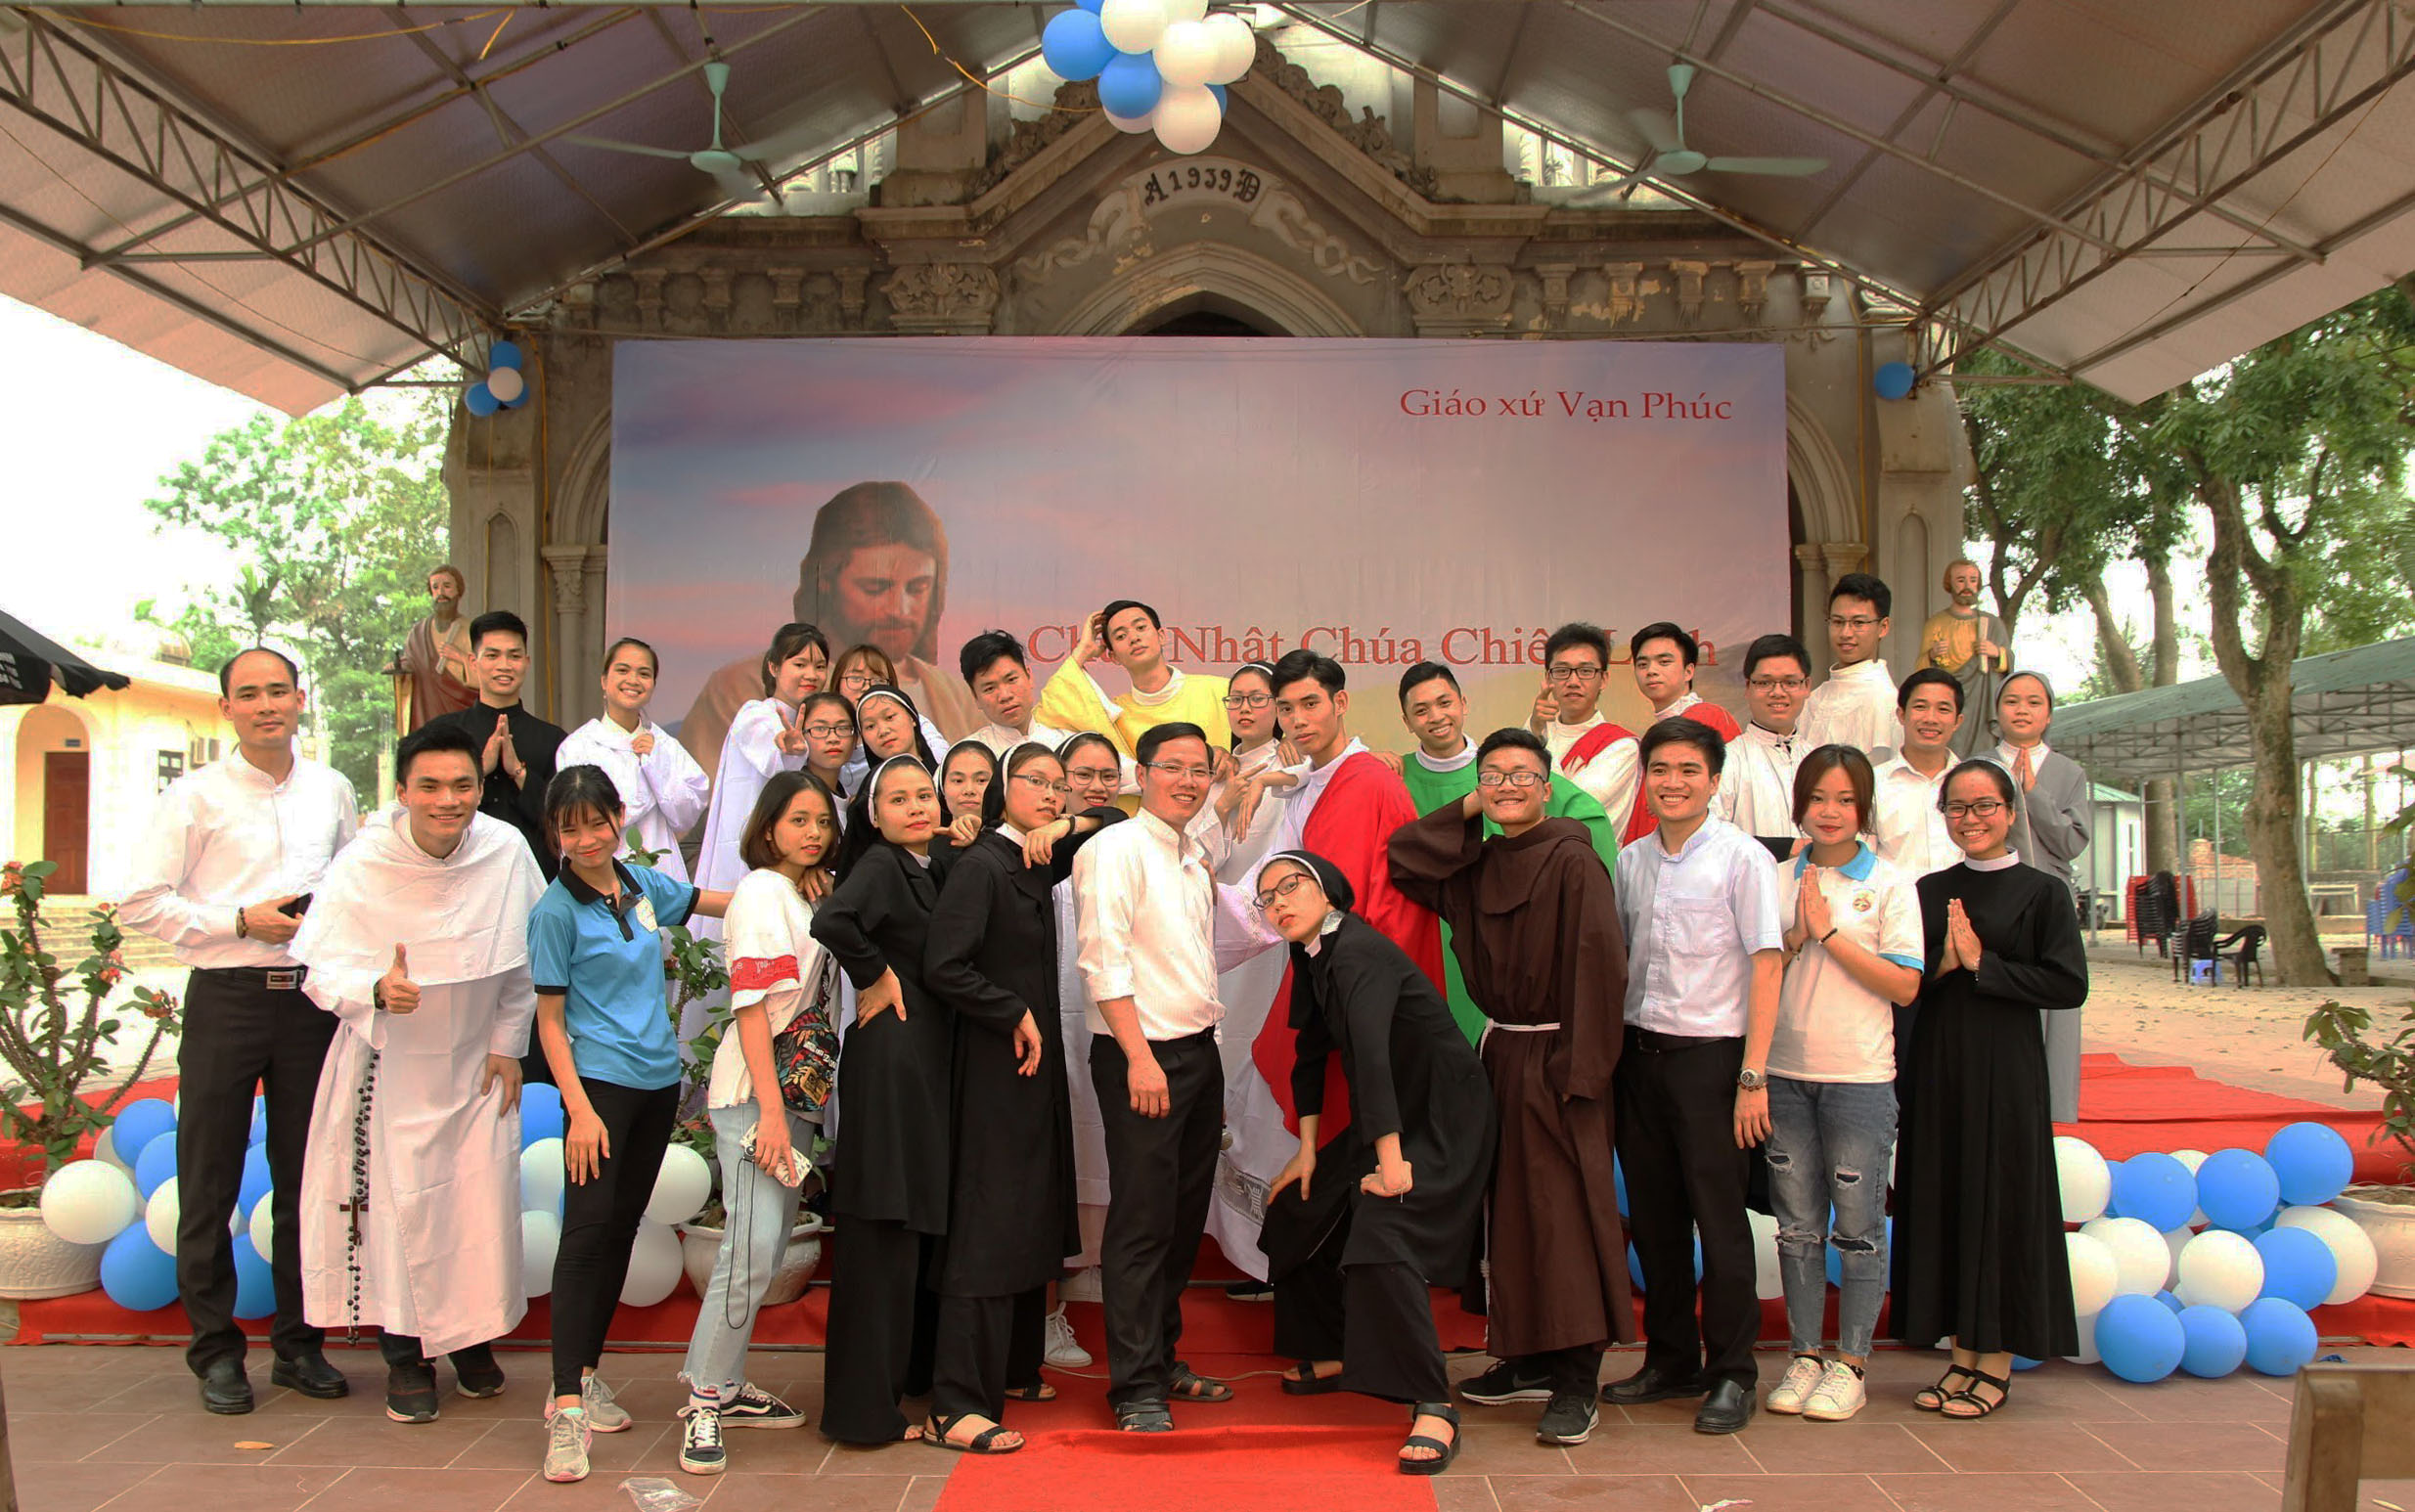 SVCG NIEM Quảng bá Ơn gọi 2018: "Niềm vui thuộc trọn về Chúa và phục vụ anh em"